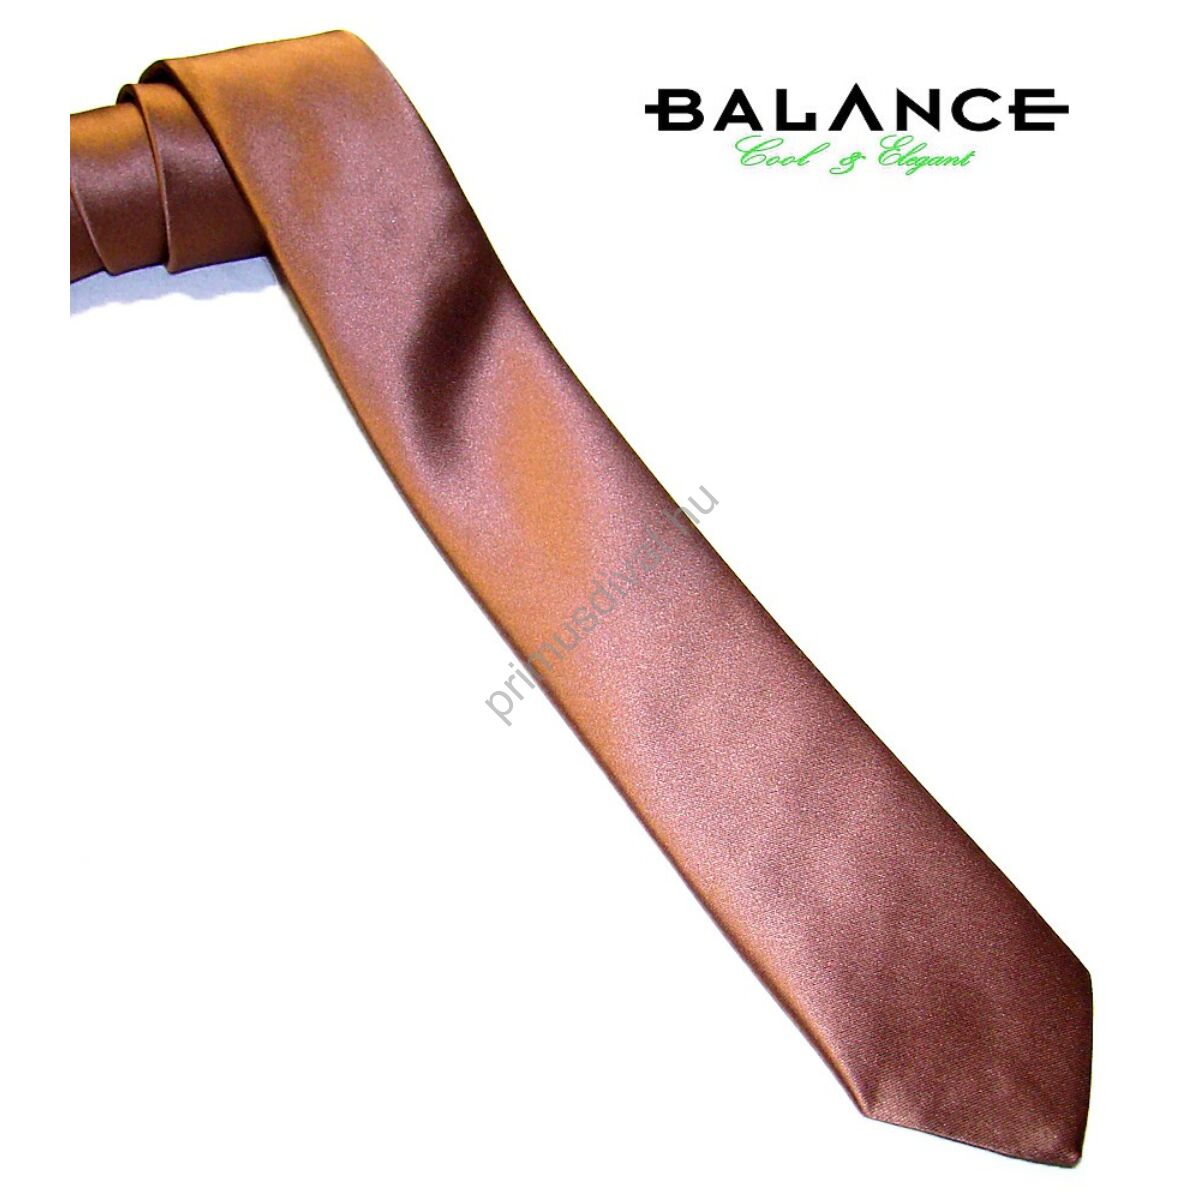 Balance keskeny selyem nyakkendő, barna